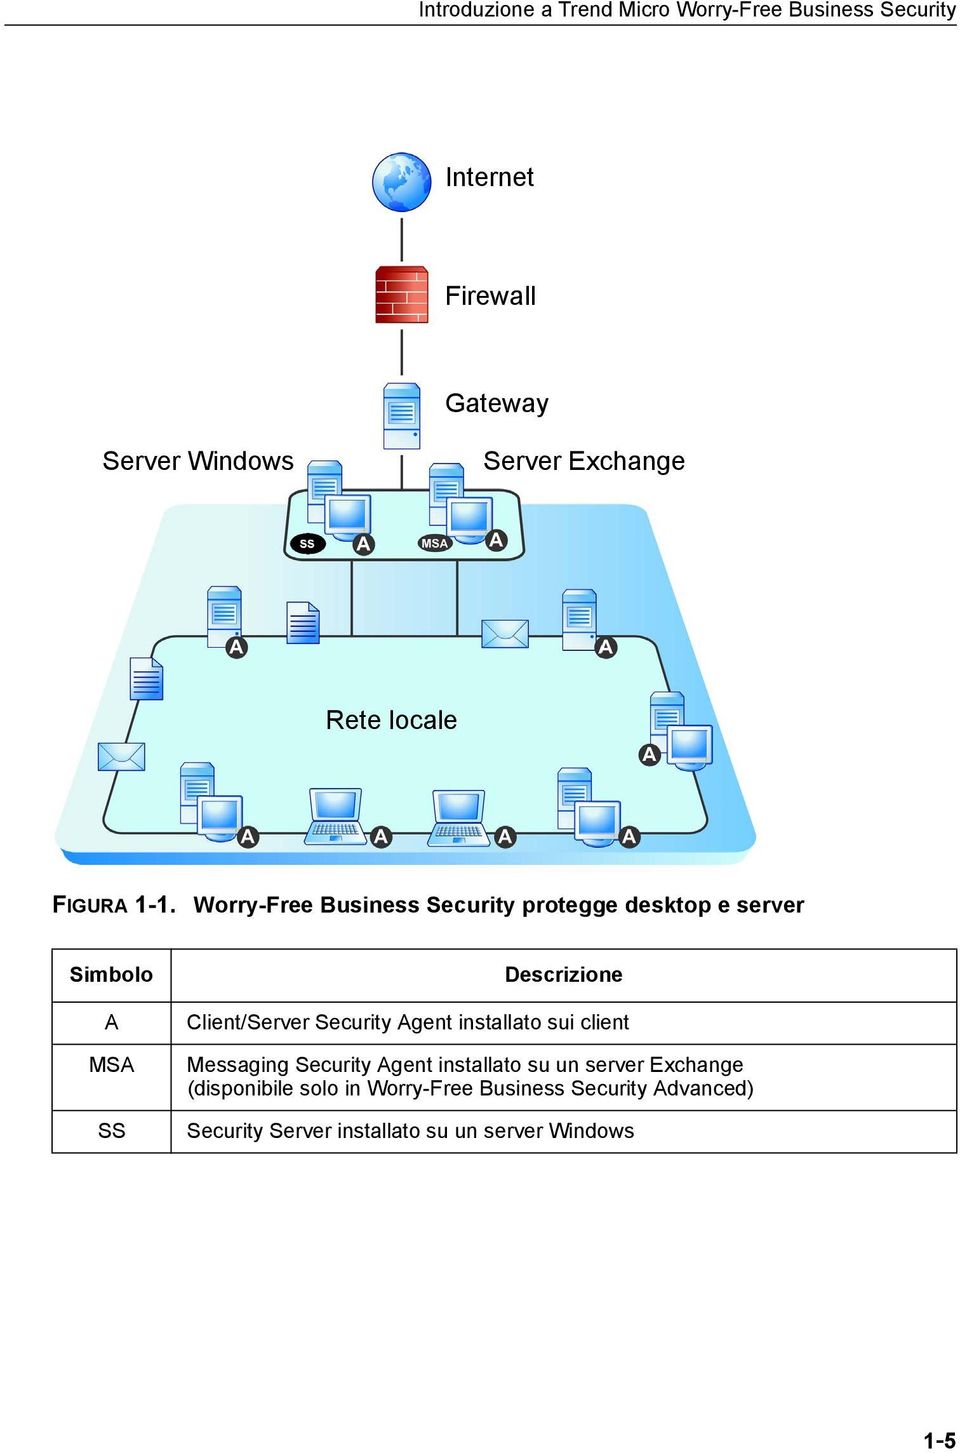 Worry-Free Business Security protegge desktop e server Simbolo A MSA SS Descrizione Client/Server Security